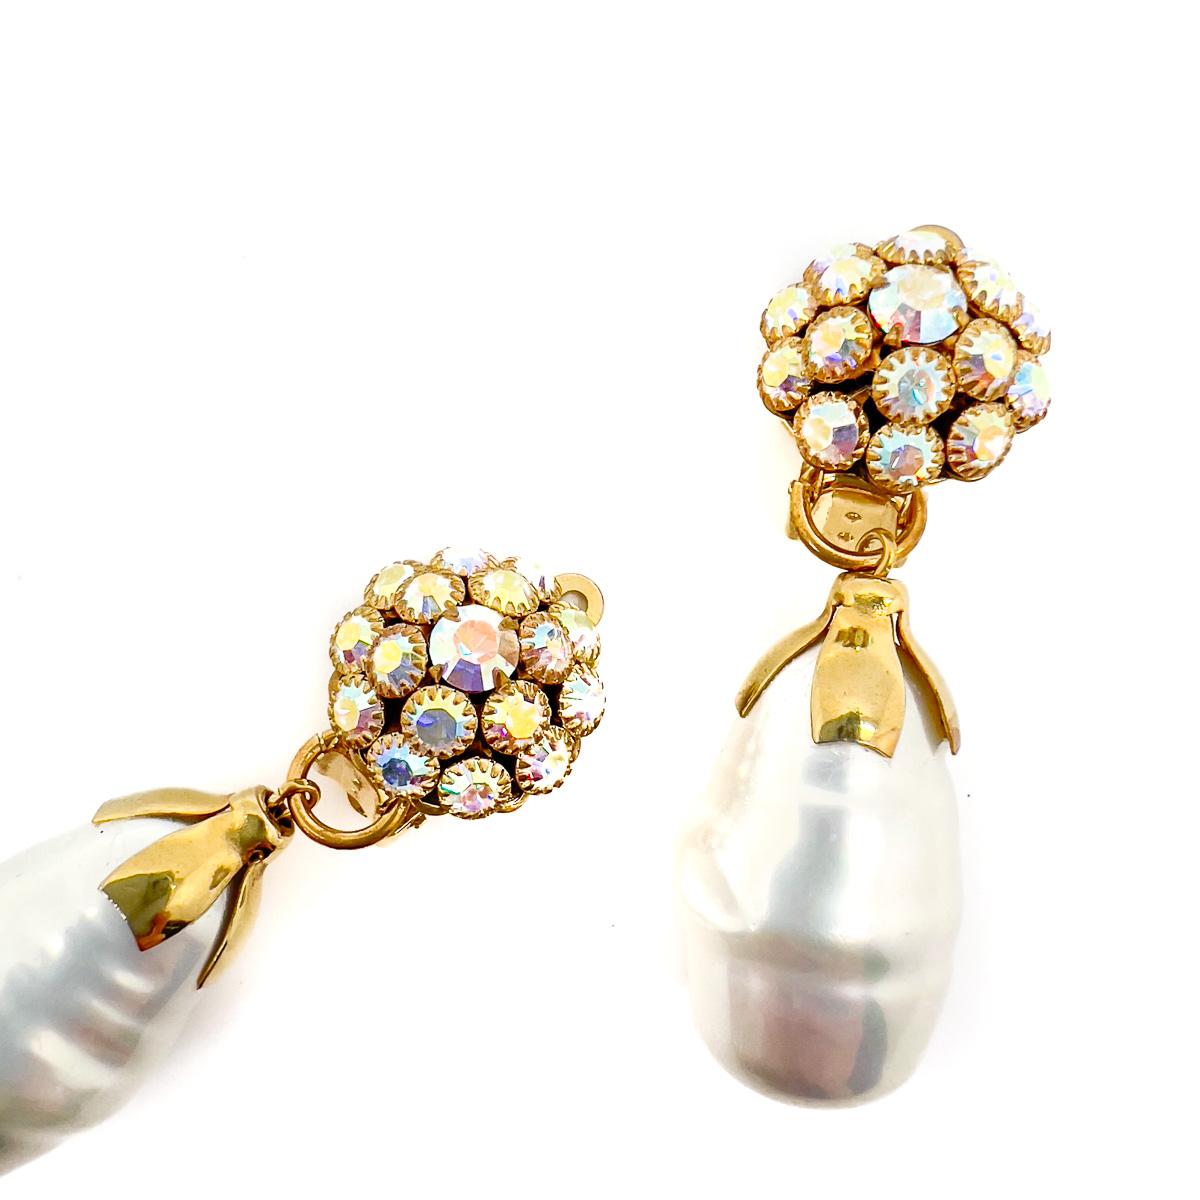 Ein Paar barocke Perlenohrringe im Vintage-Stil. Der Polarlichtaufsatz erweist sich als so hübscher Schmuck für das Ohr. Eine wunderschöne, extravagante Glasbarockperle, die an einer bezaubernden vergoldeten Pixie-Kappe hängt. Verträumt mit